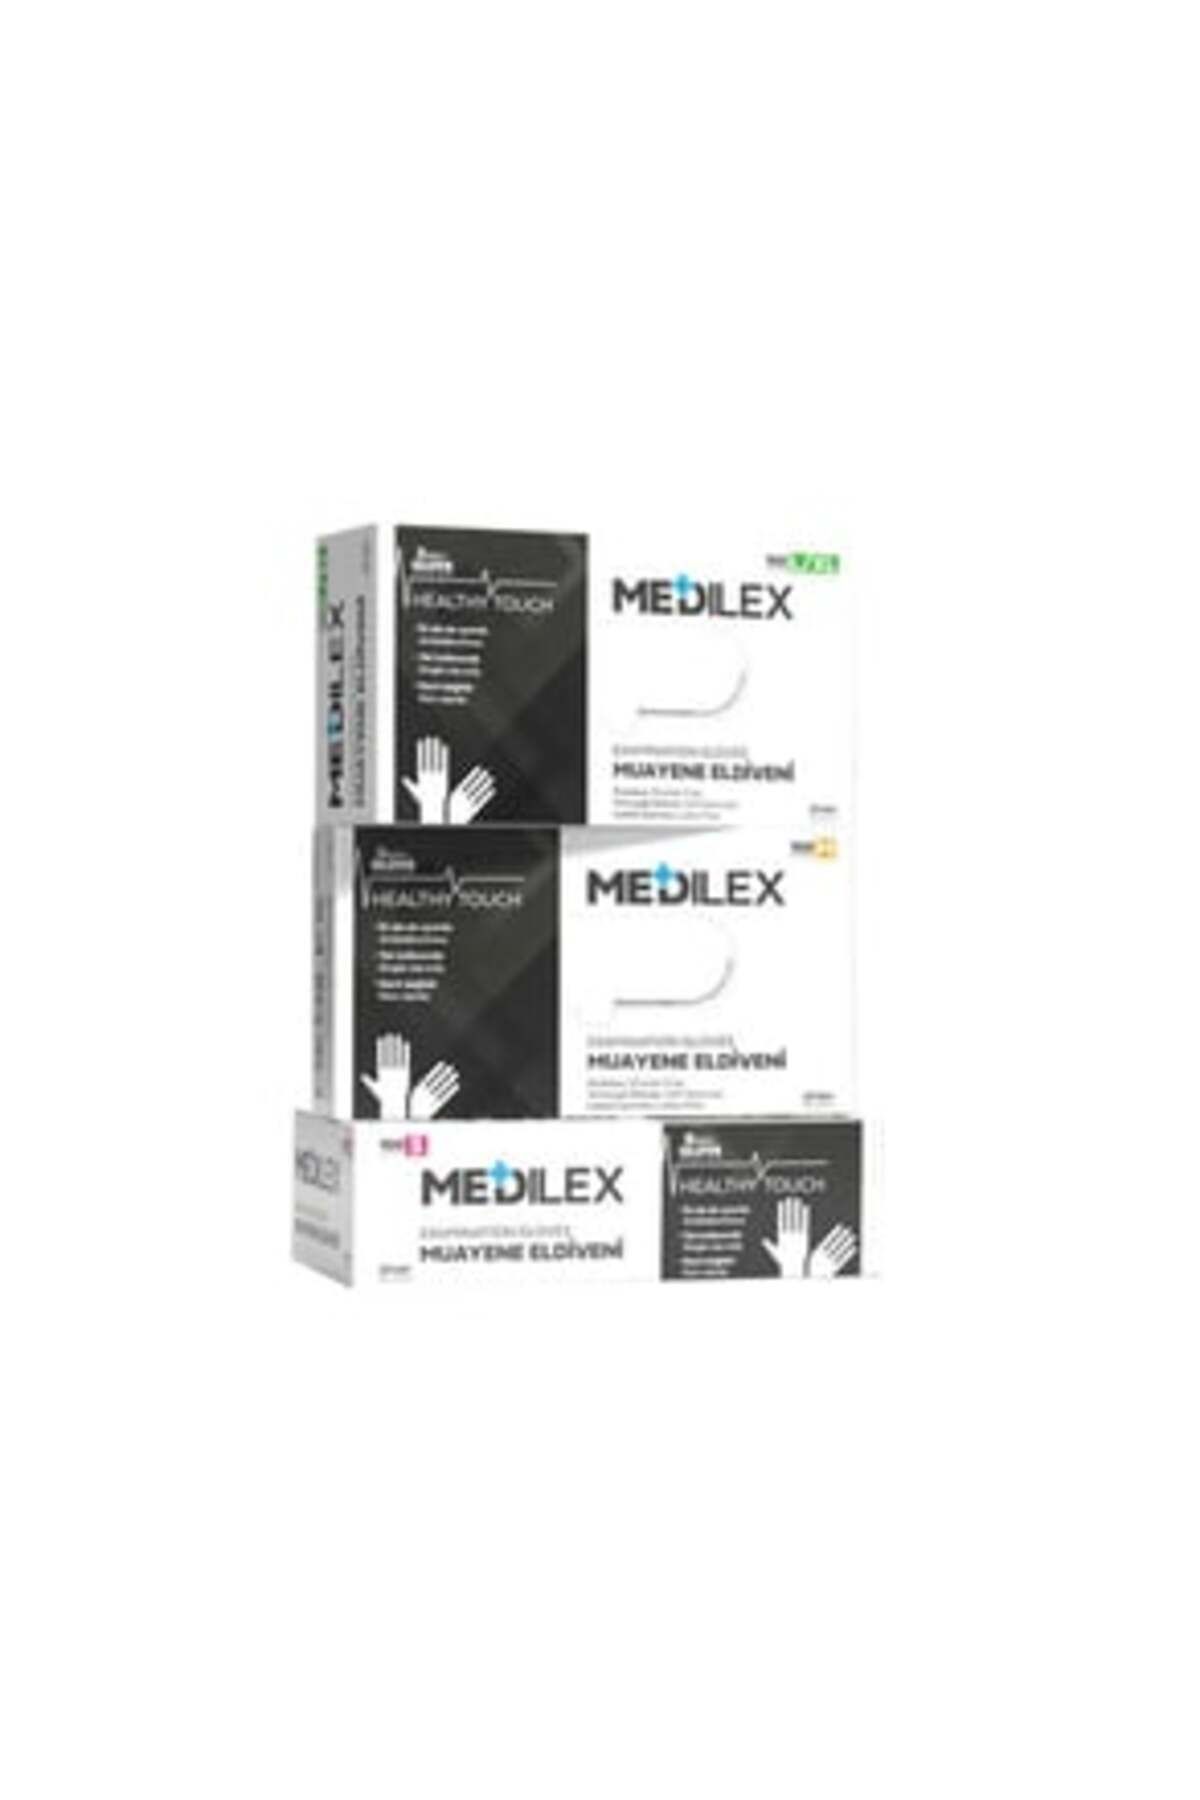 Reflex ( 1 ADET ) Reflex Medilex Pudrasız Muayene Eldiveni Siyah M Beden 100'lü Paket